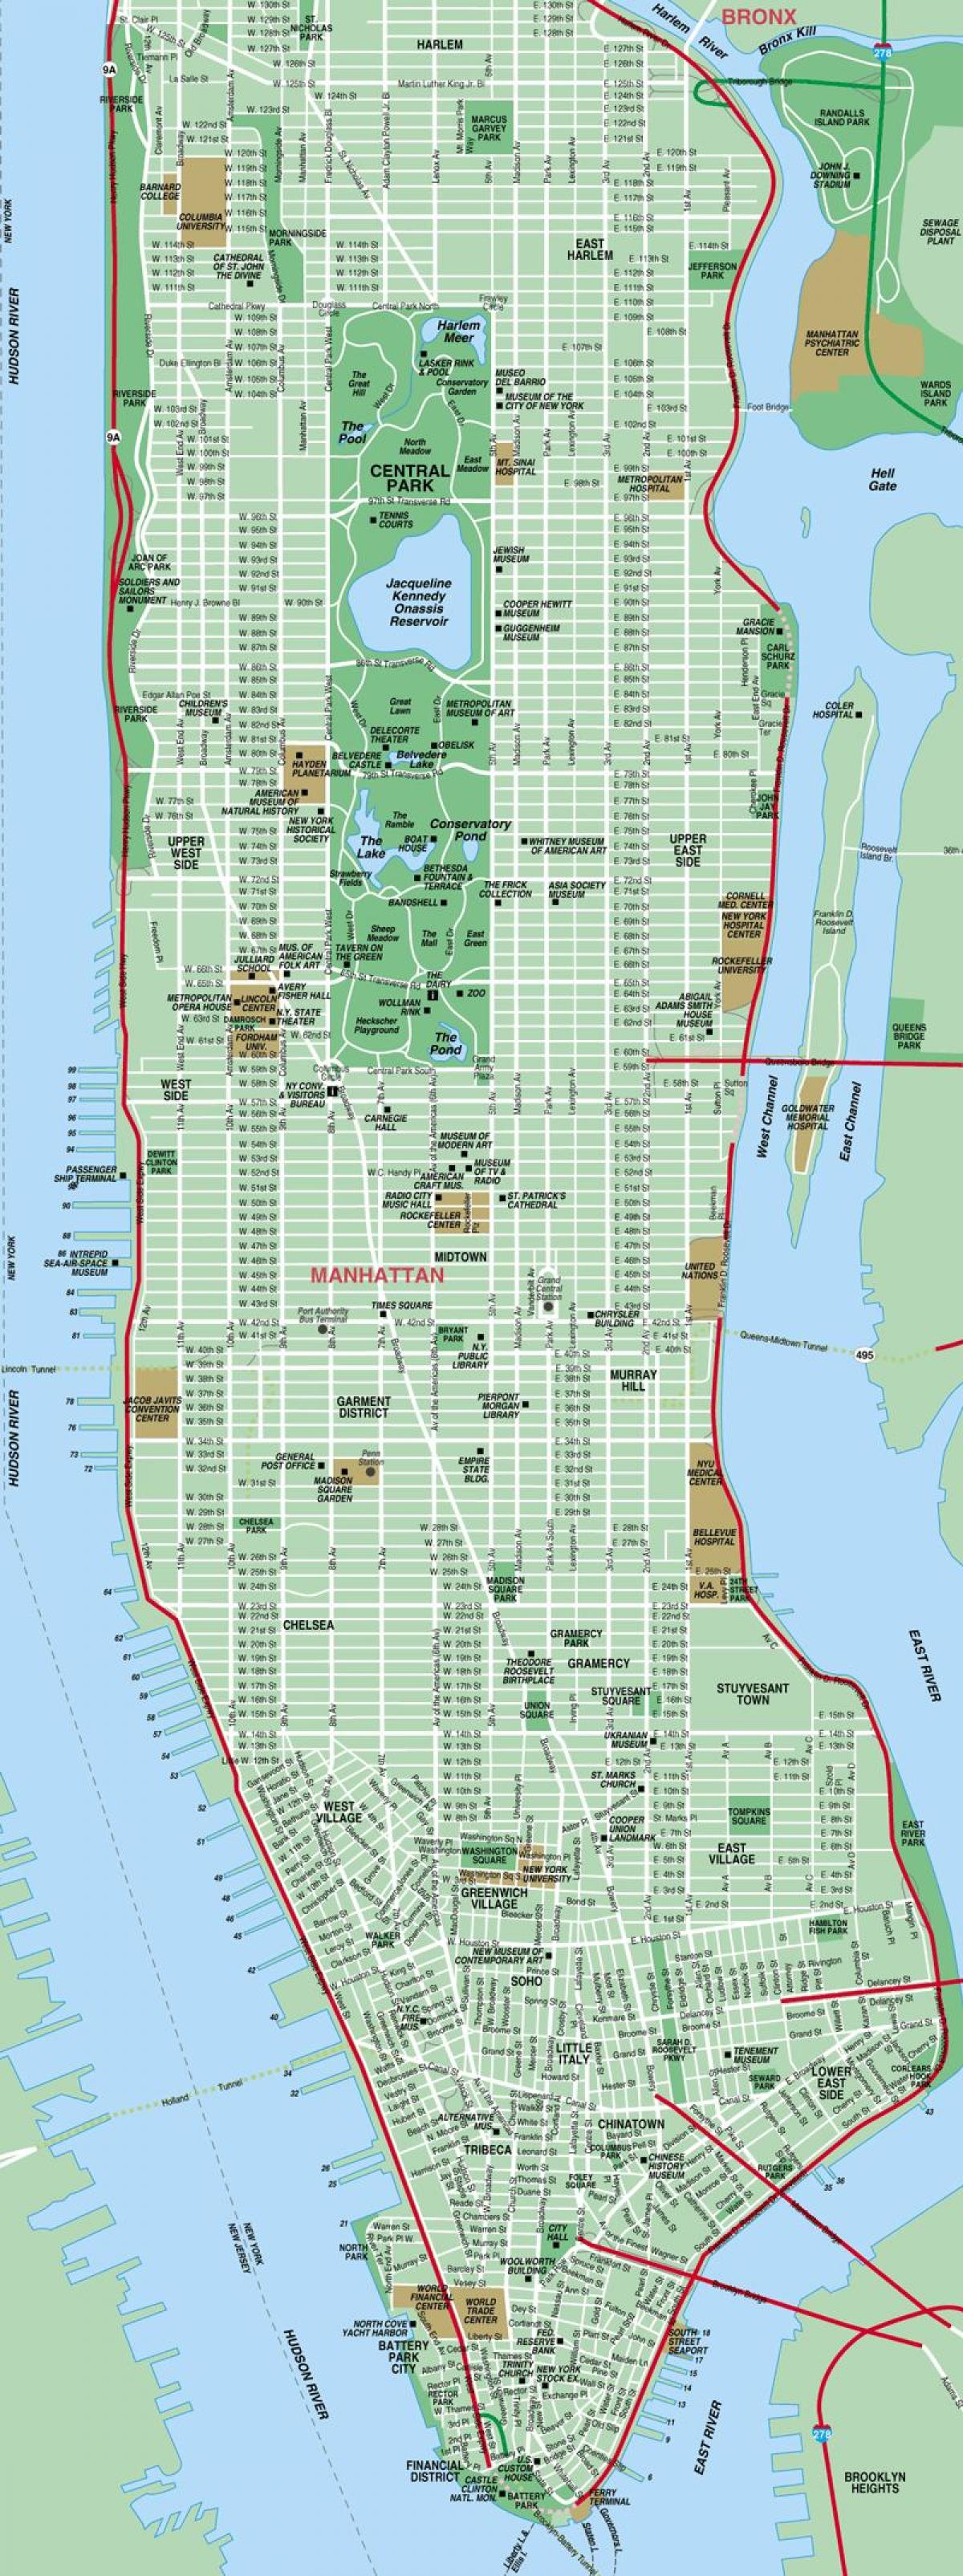 Manhattan mappa delle strade